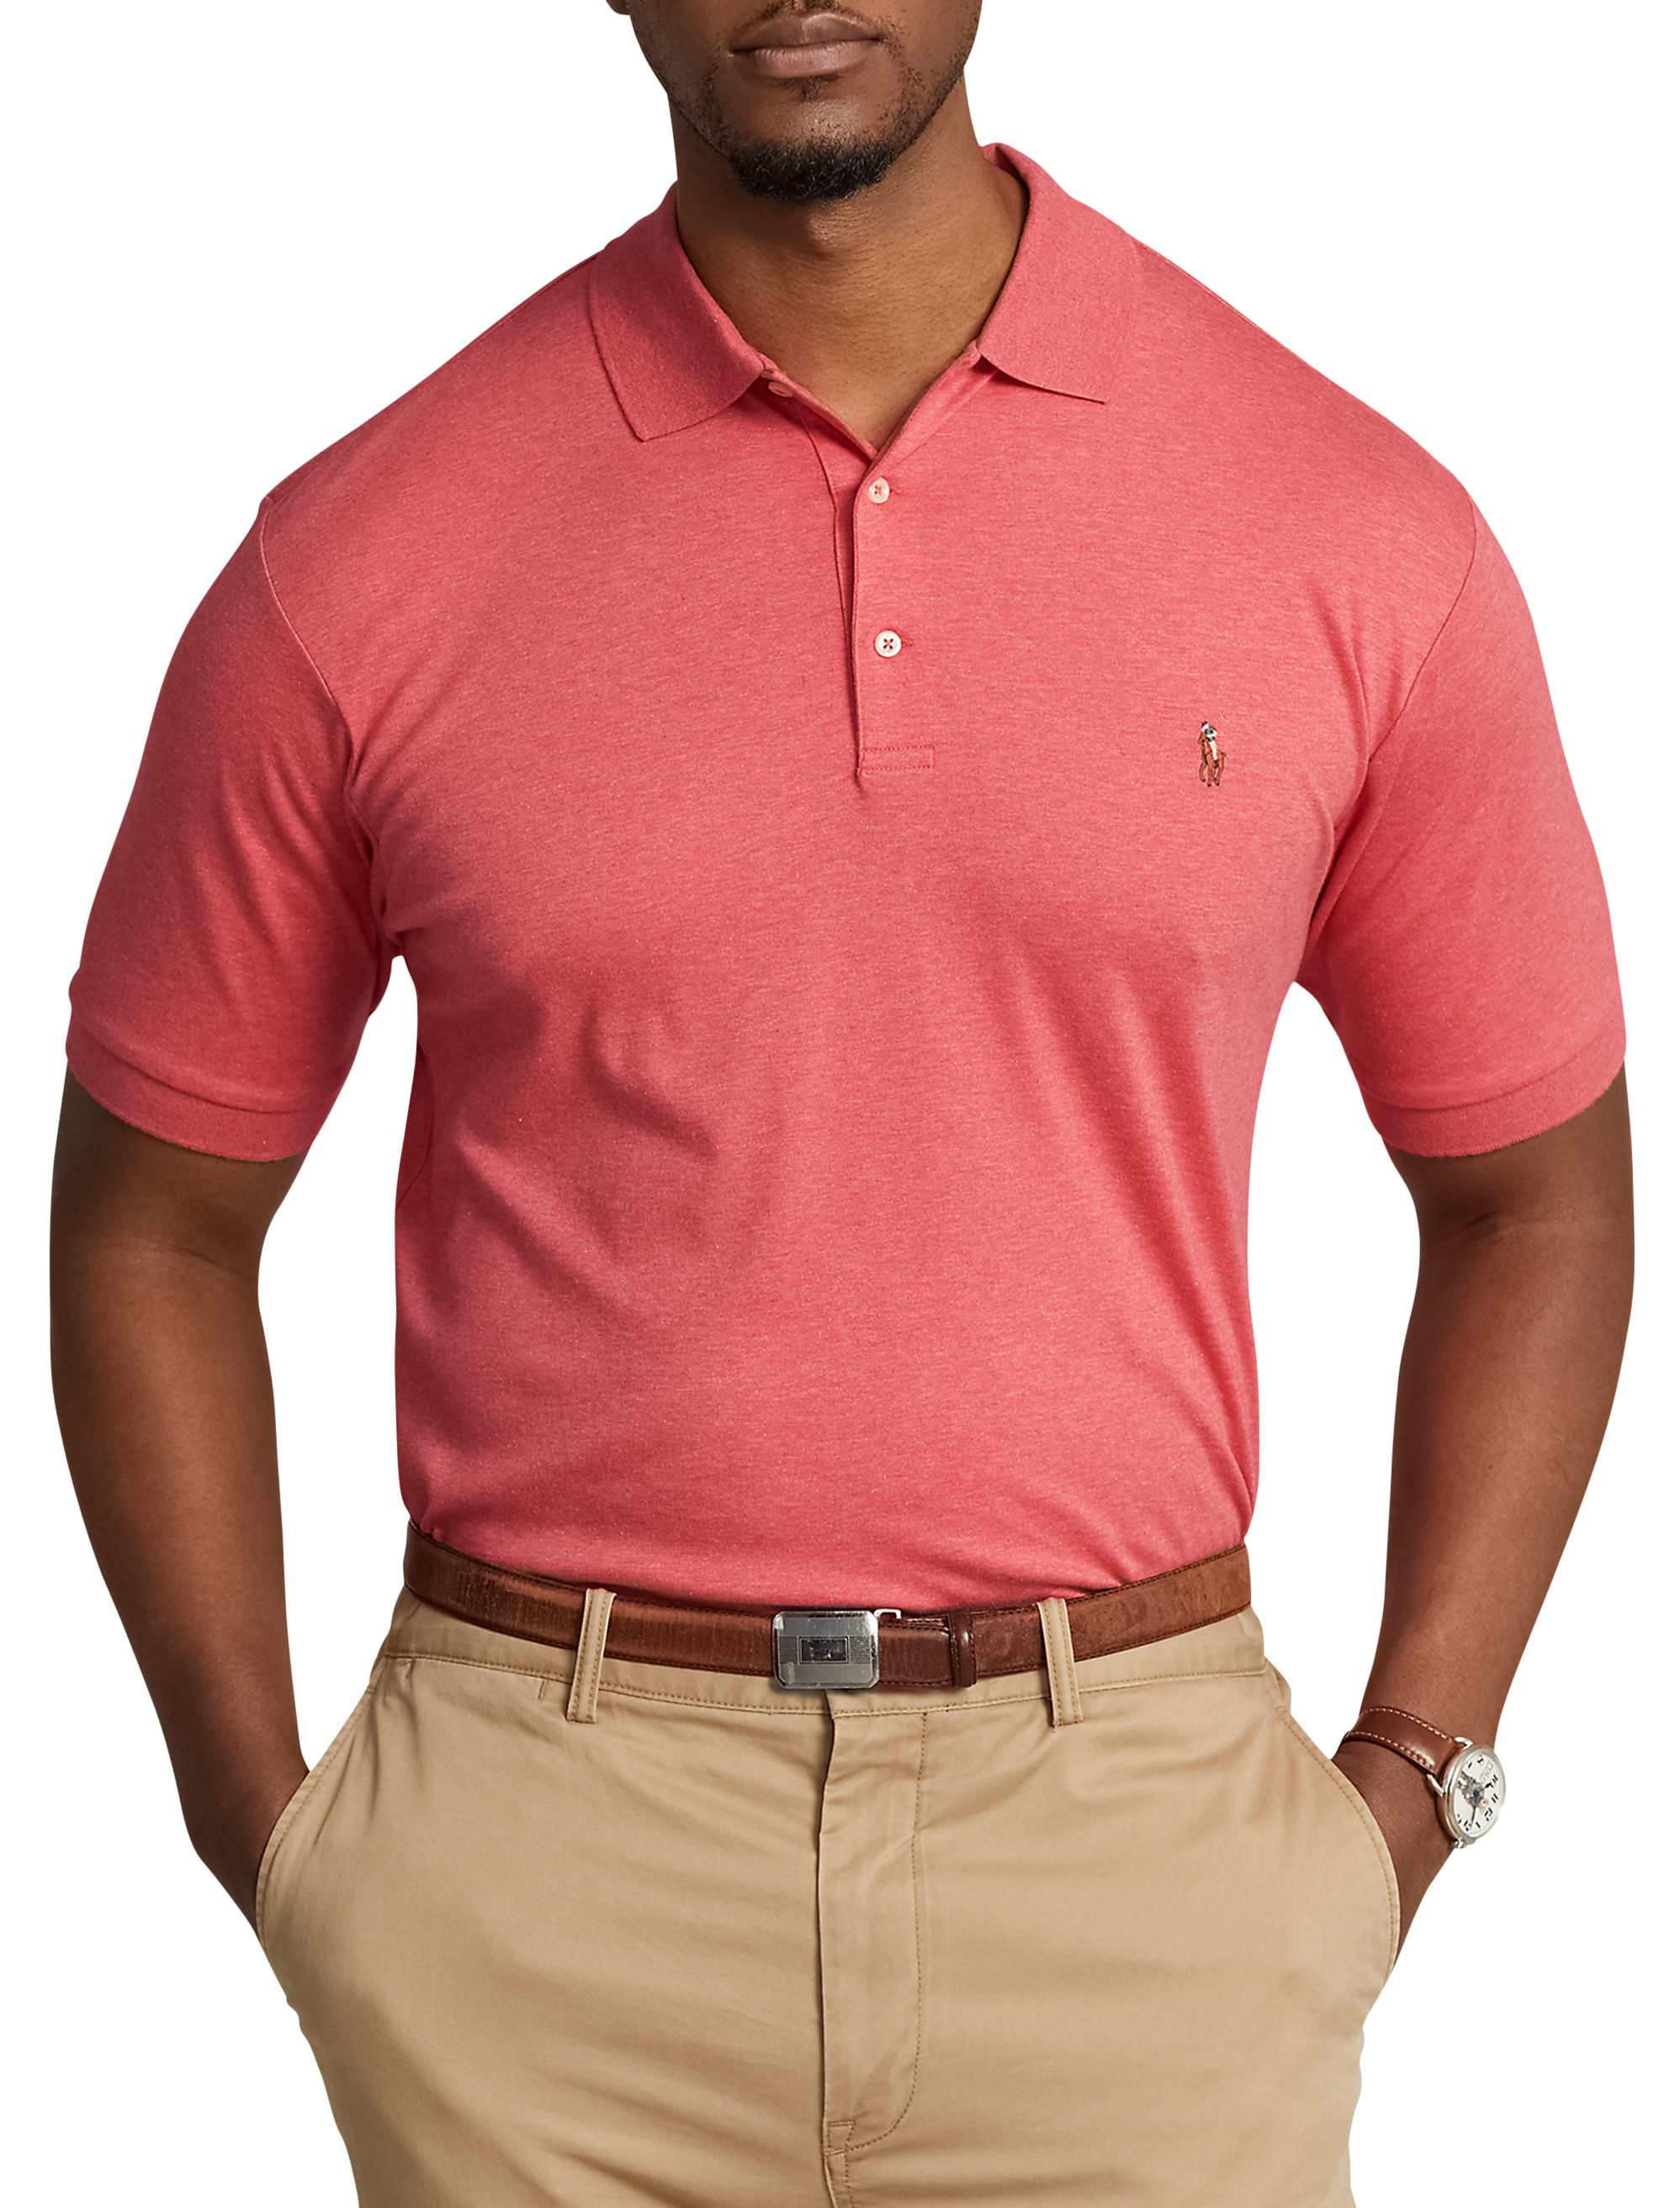 Big + Tall | Polo Ralph Lauren Soft Touch Polo Shirt | DXL